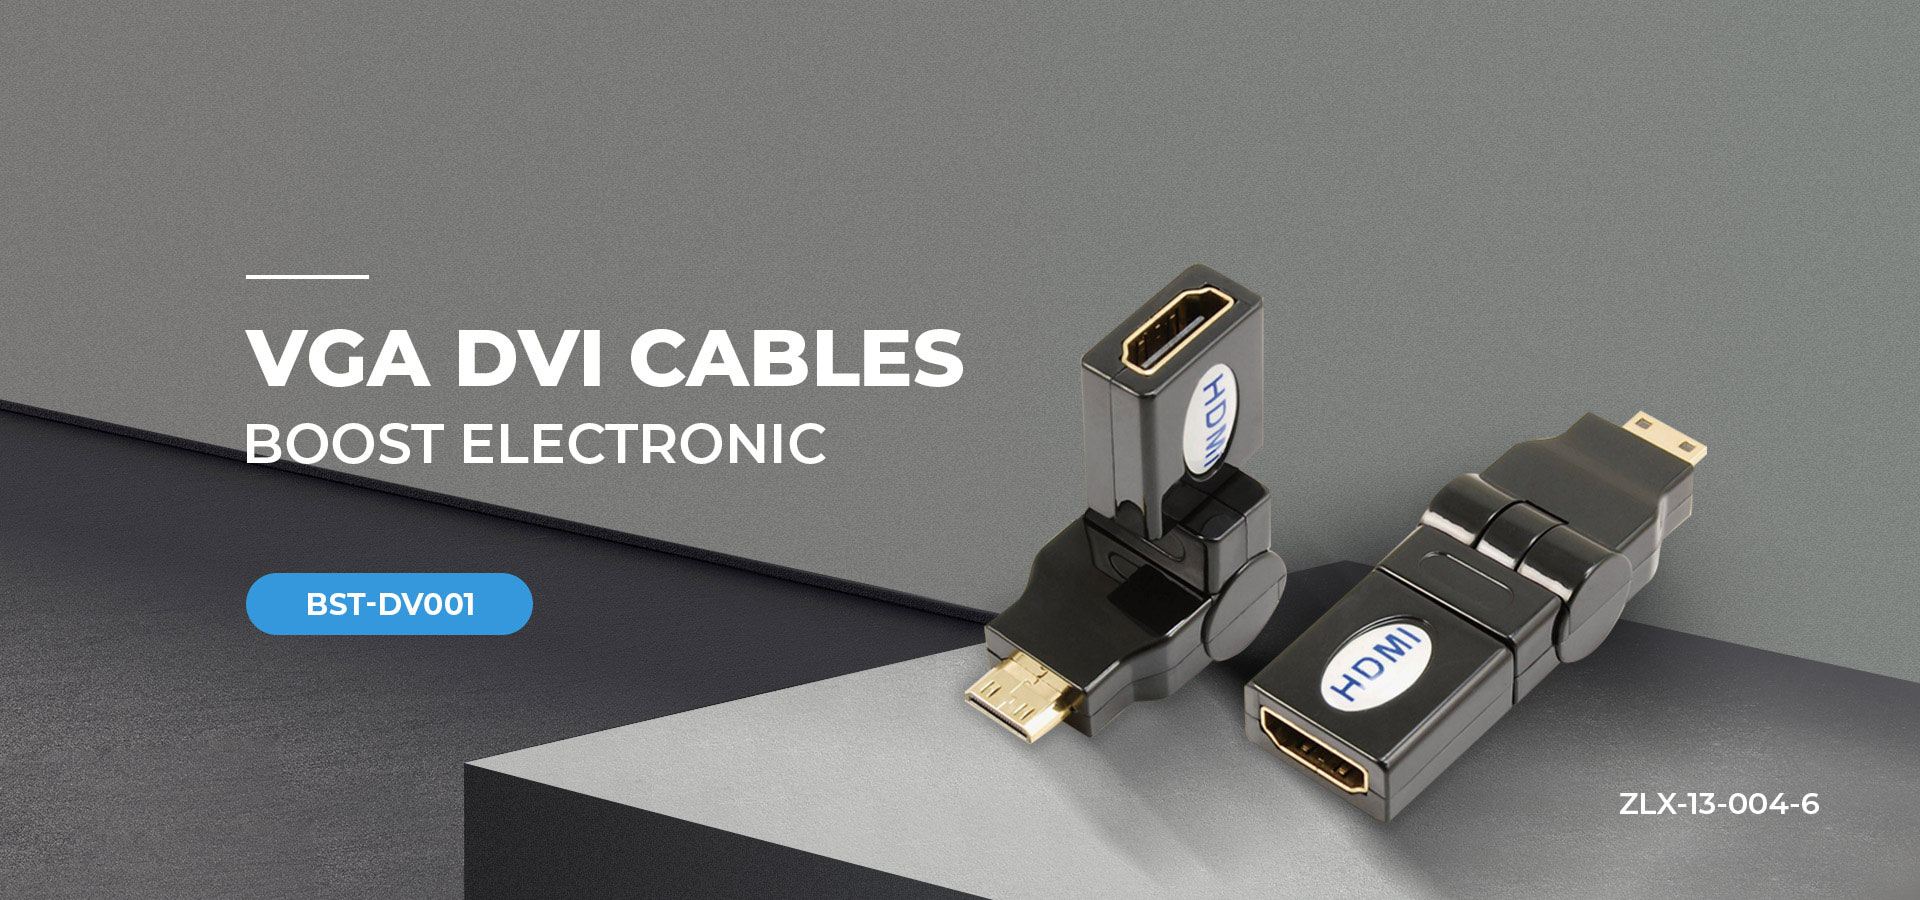 VGA DVI cables